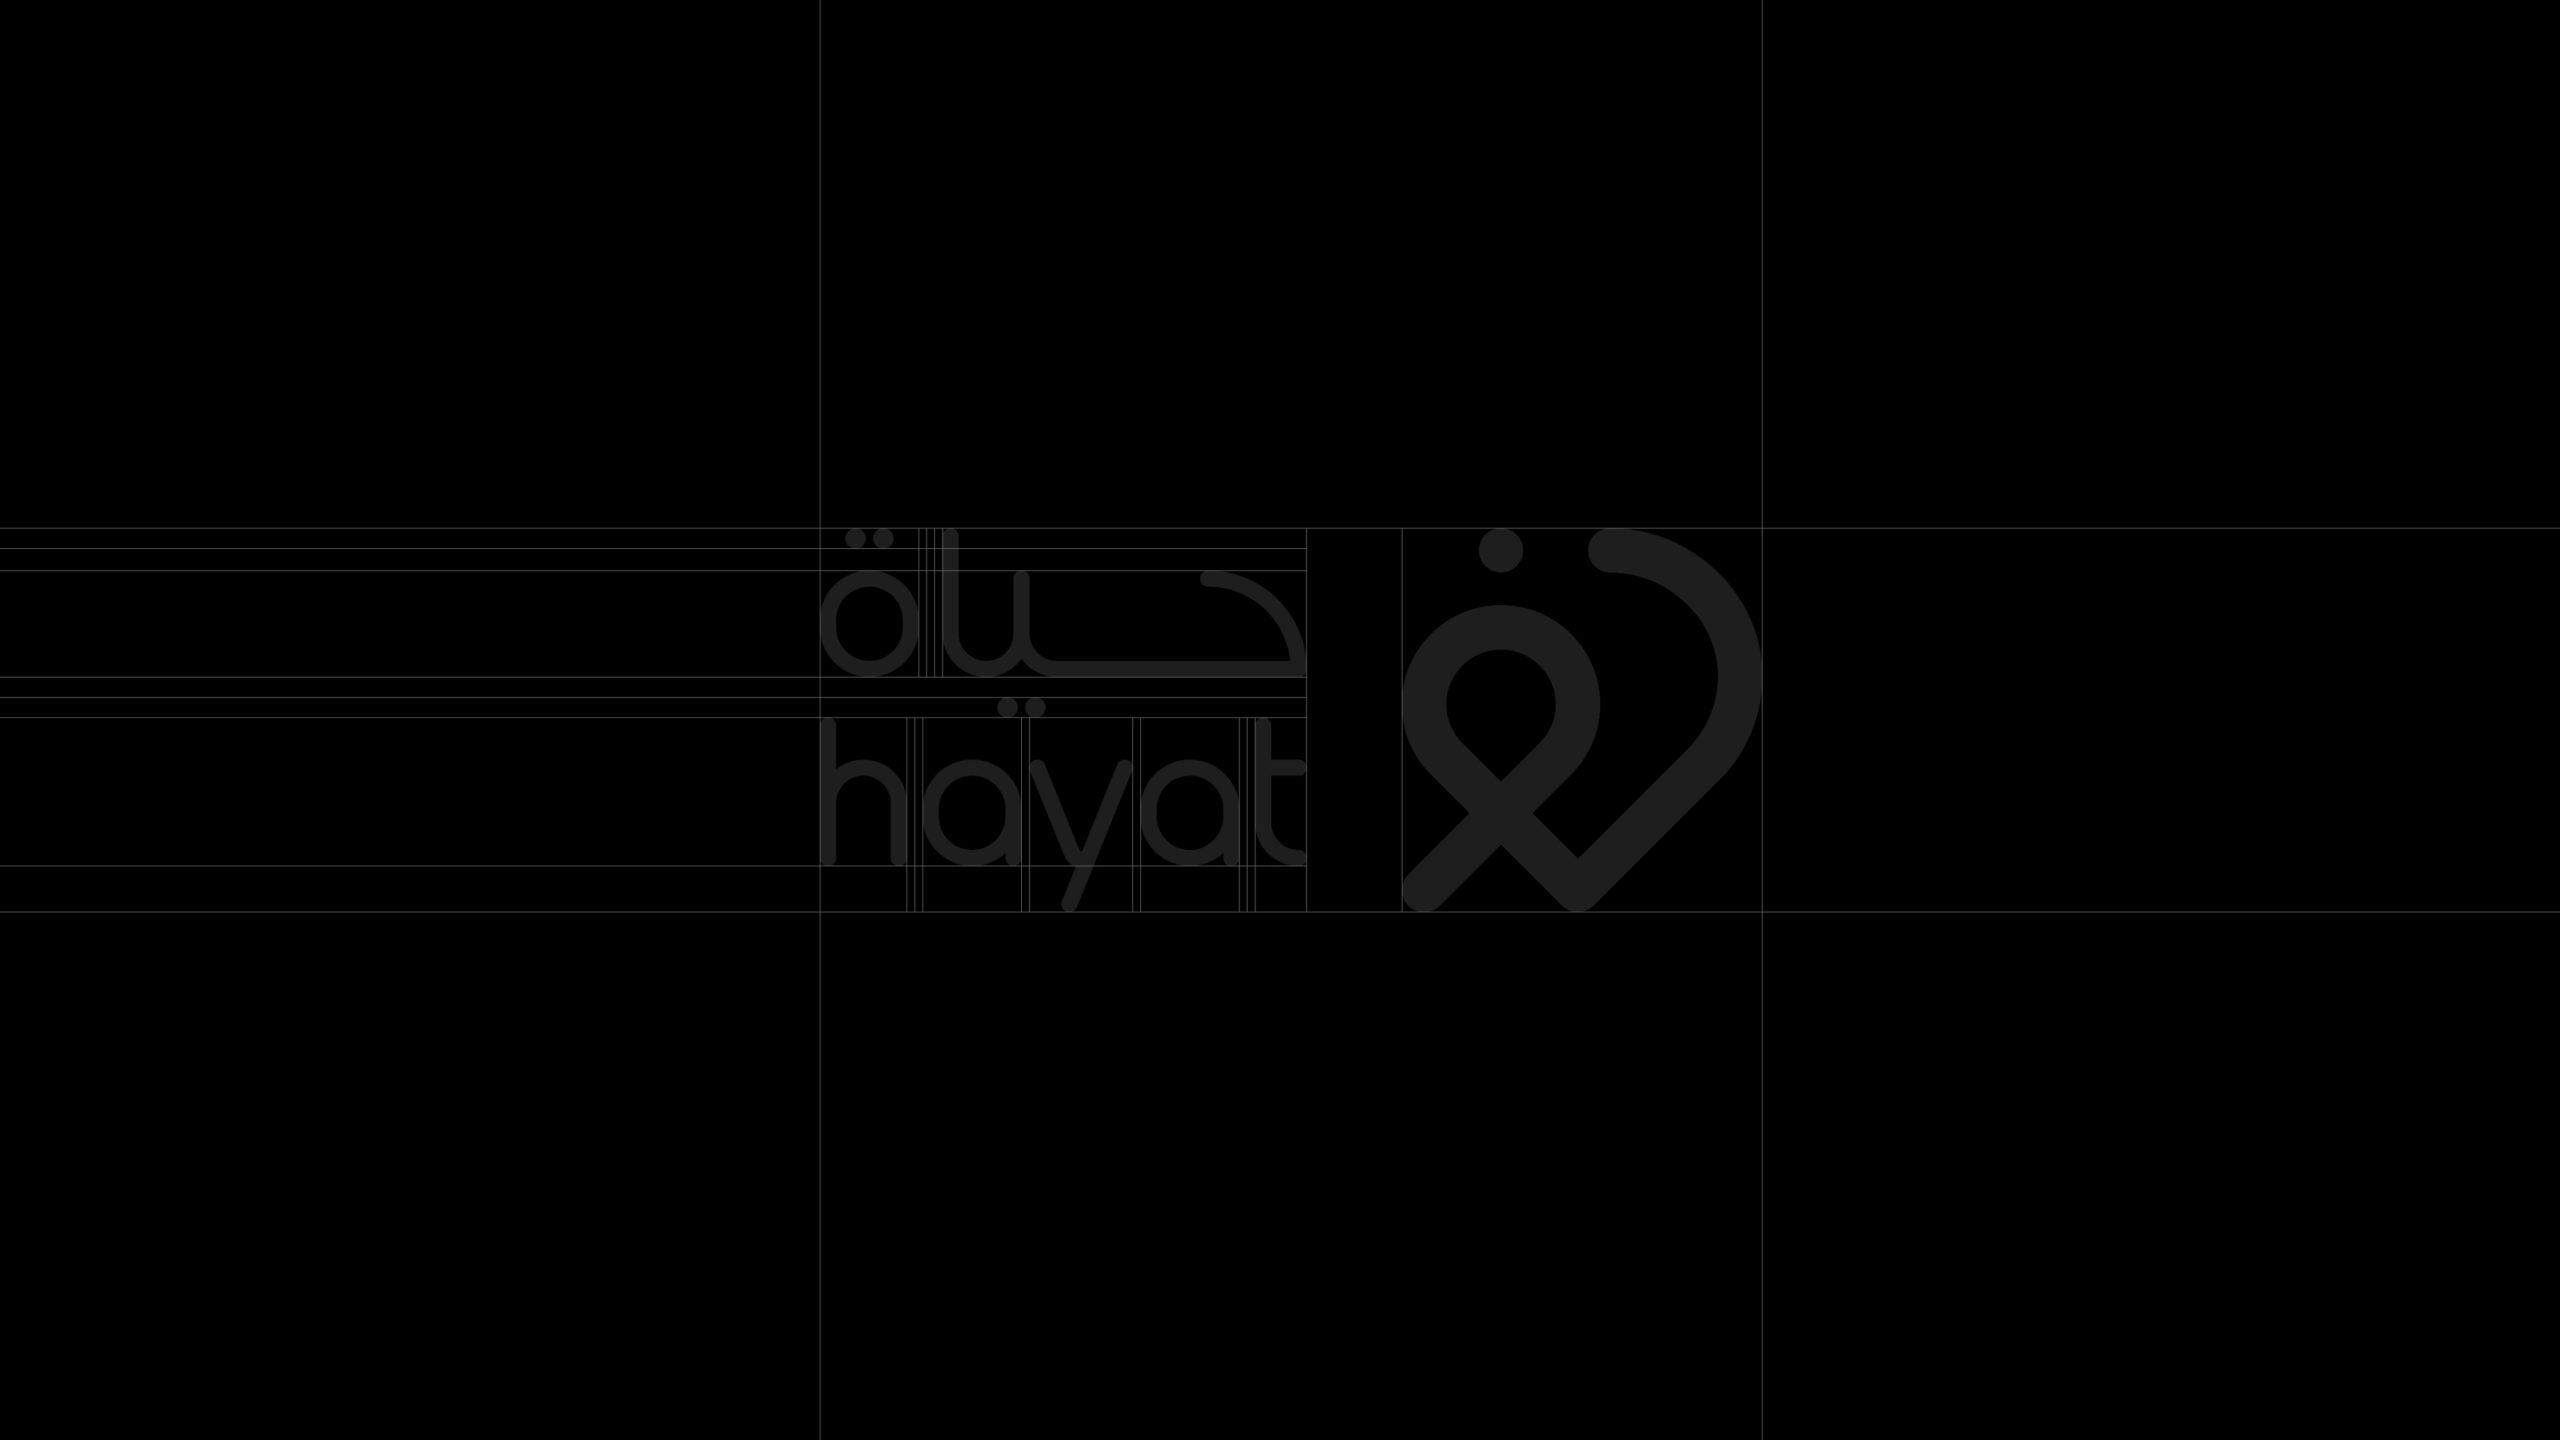 Hayat-App-Branding-By-Millimeter-Creative-Agency-06